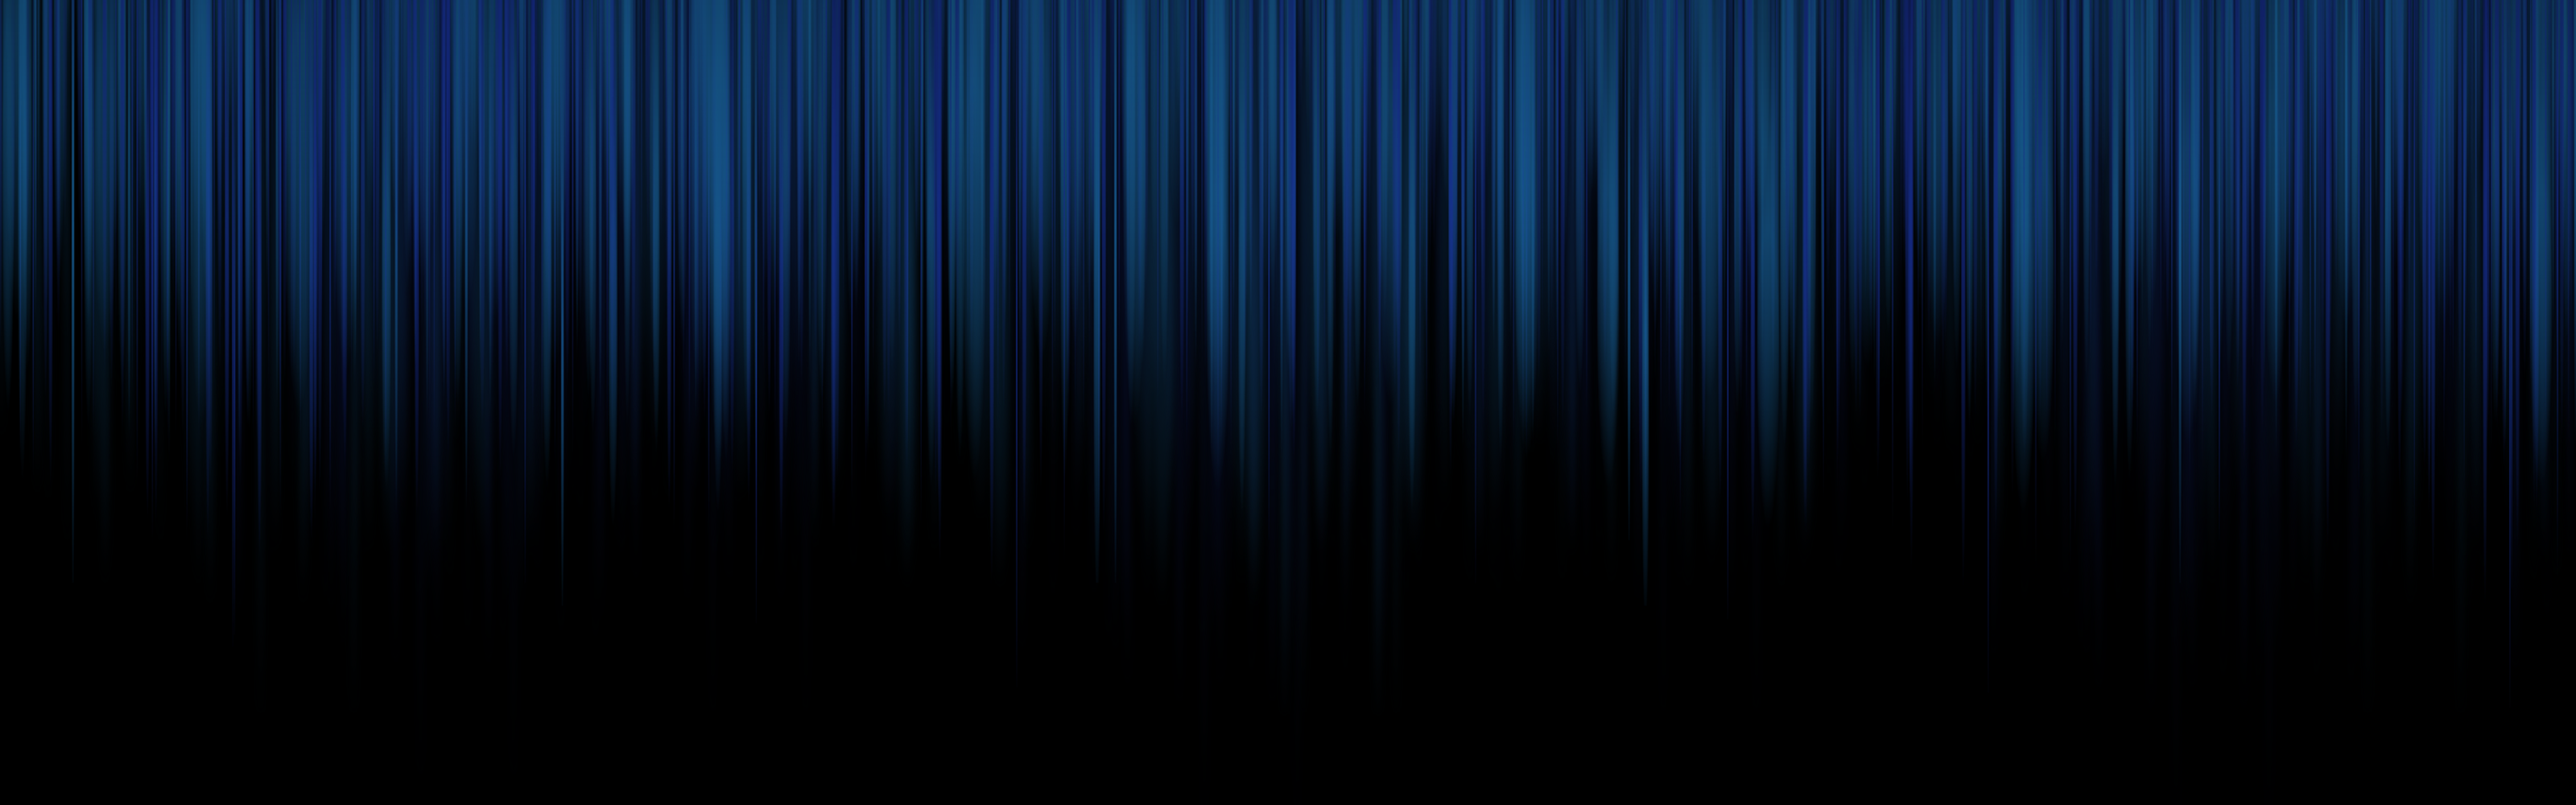 3200 x 900 fond d'écran,bleu,noir,bleu électrique,bleu cobalt,lumière